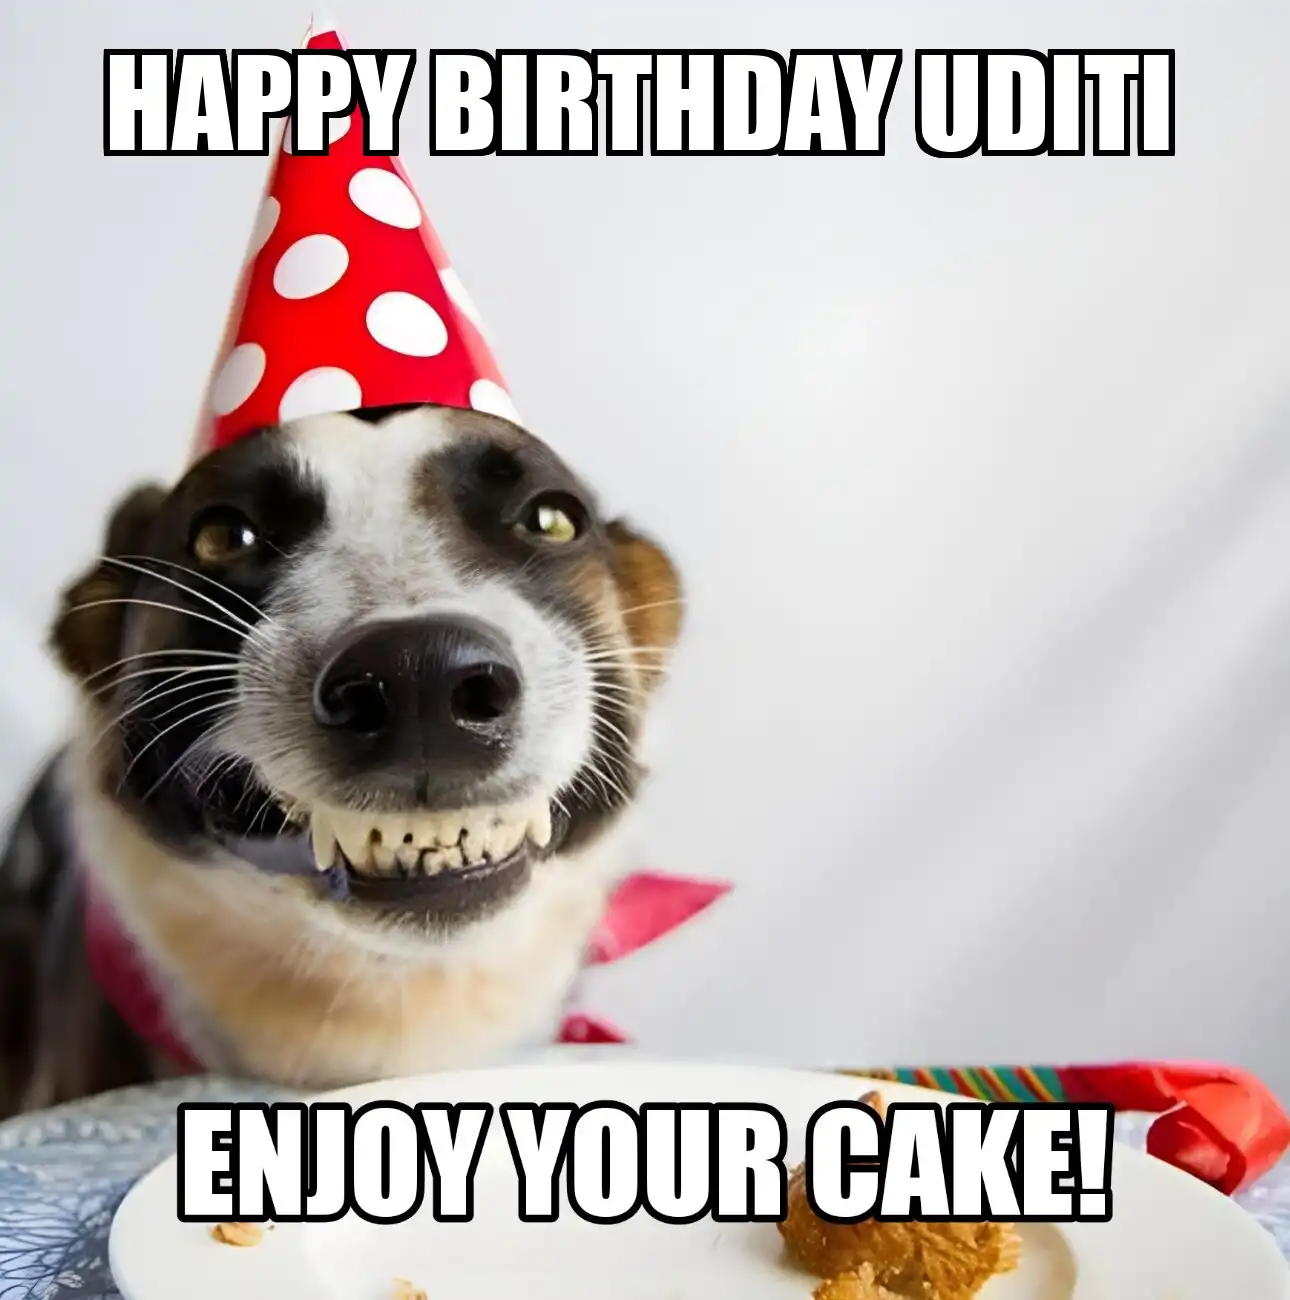 Happy Birthday Uditi Enjoy Your Cake Dog Meme